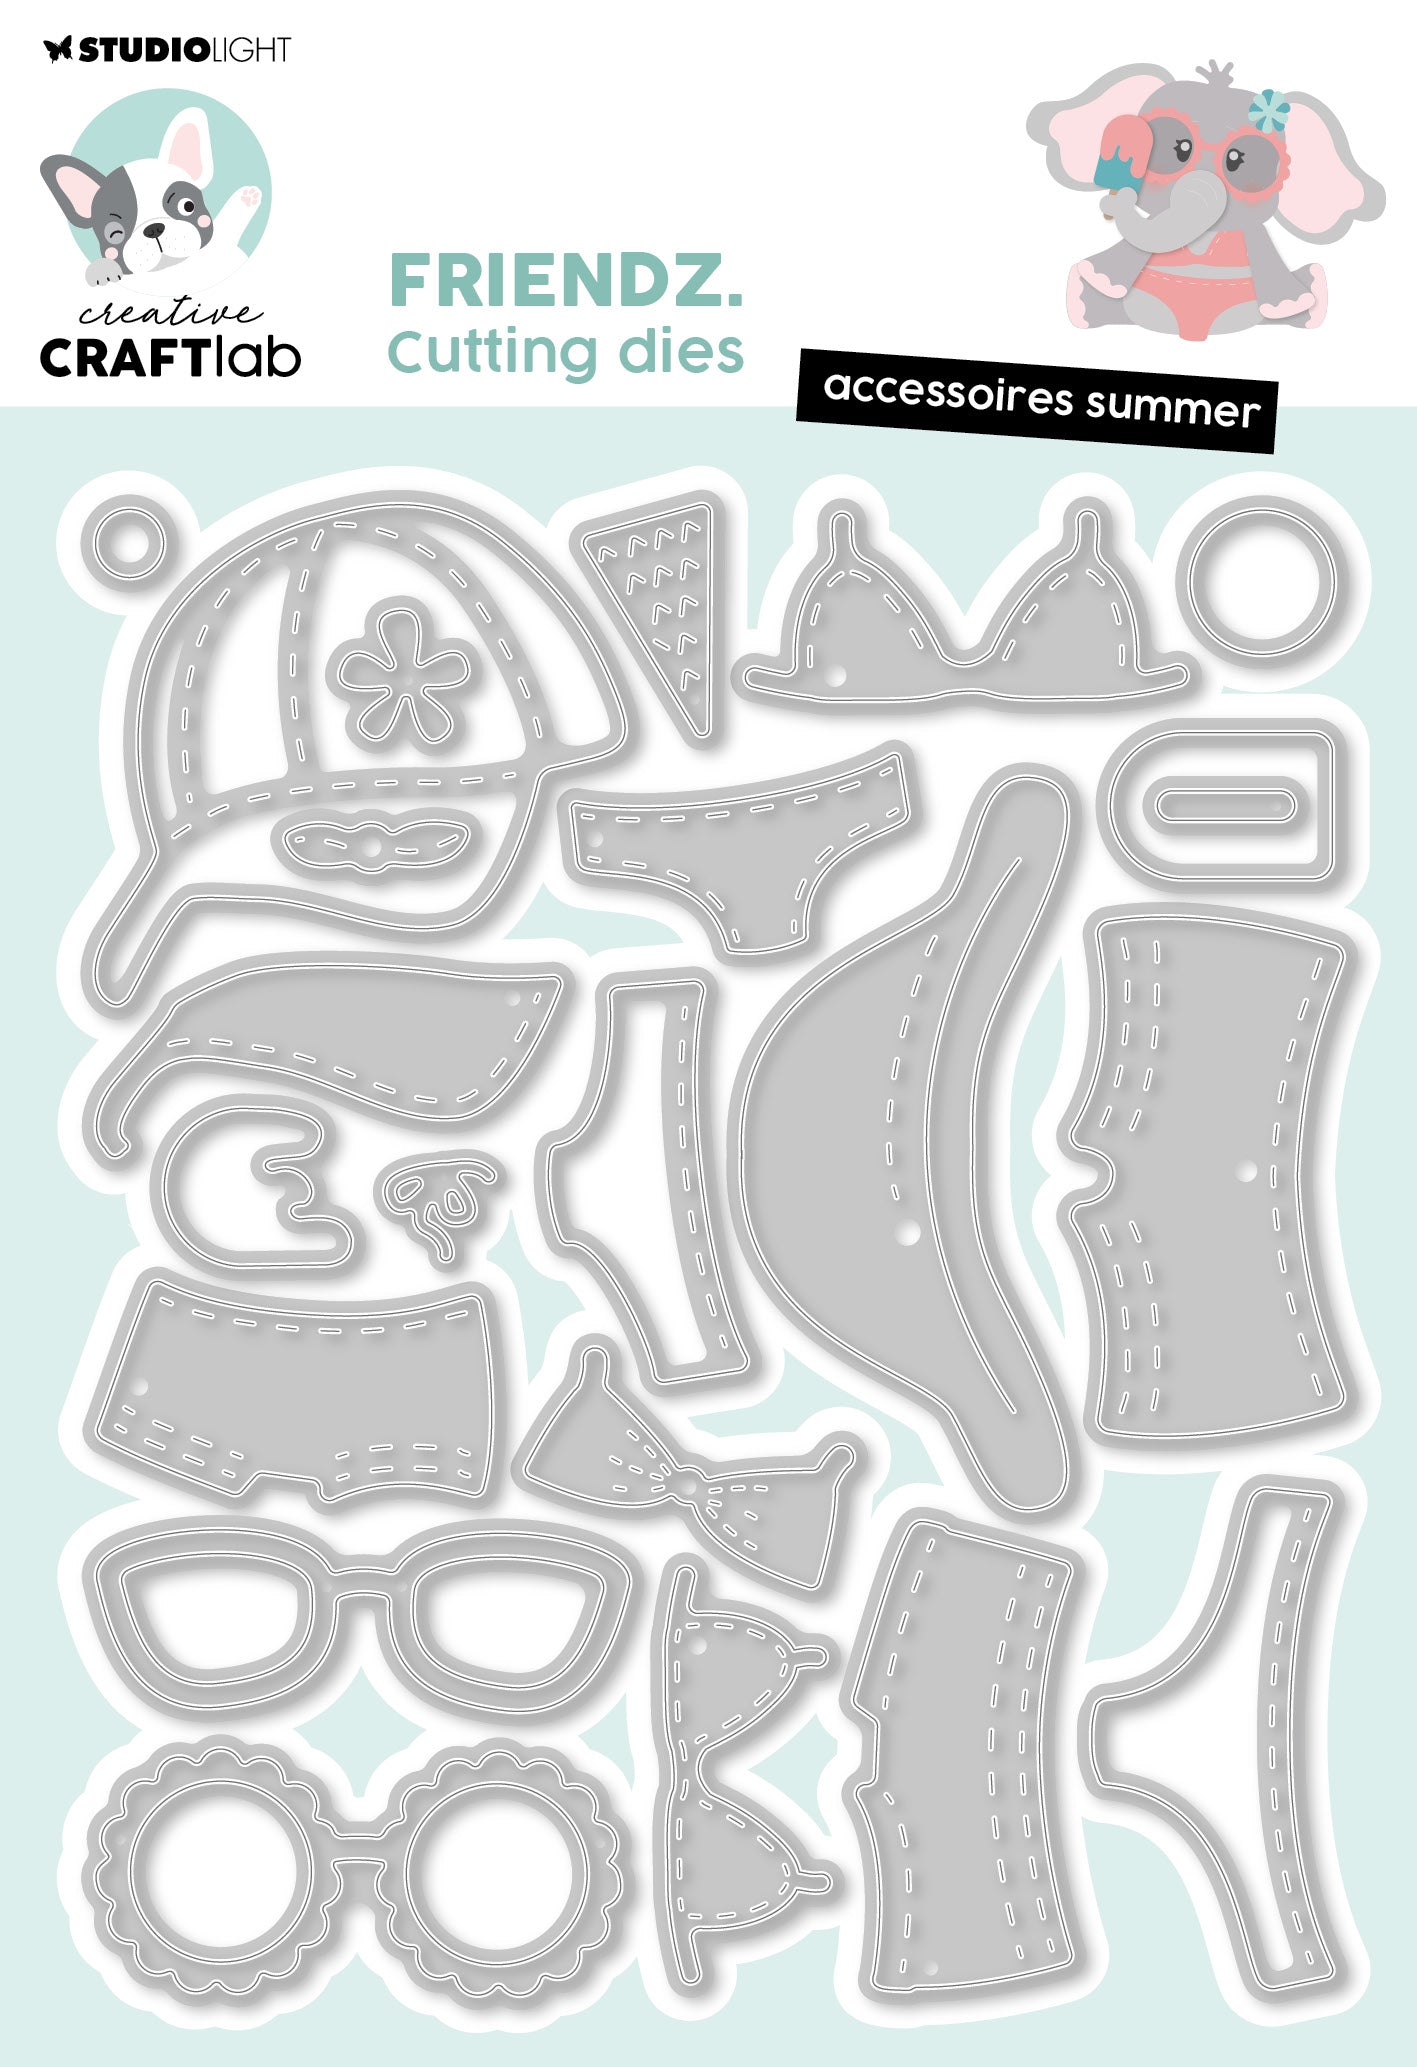 CCL Cutting Die Accessories Summer Friendz 20 PC